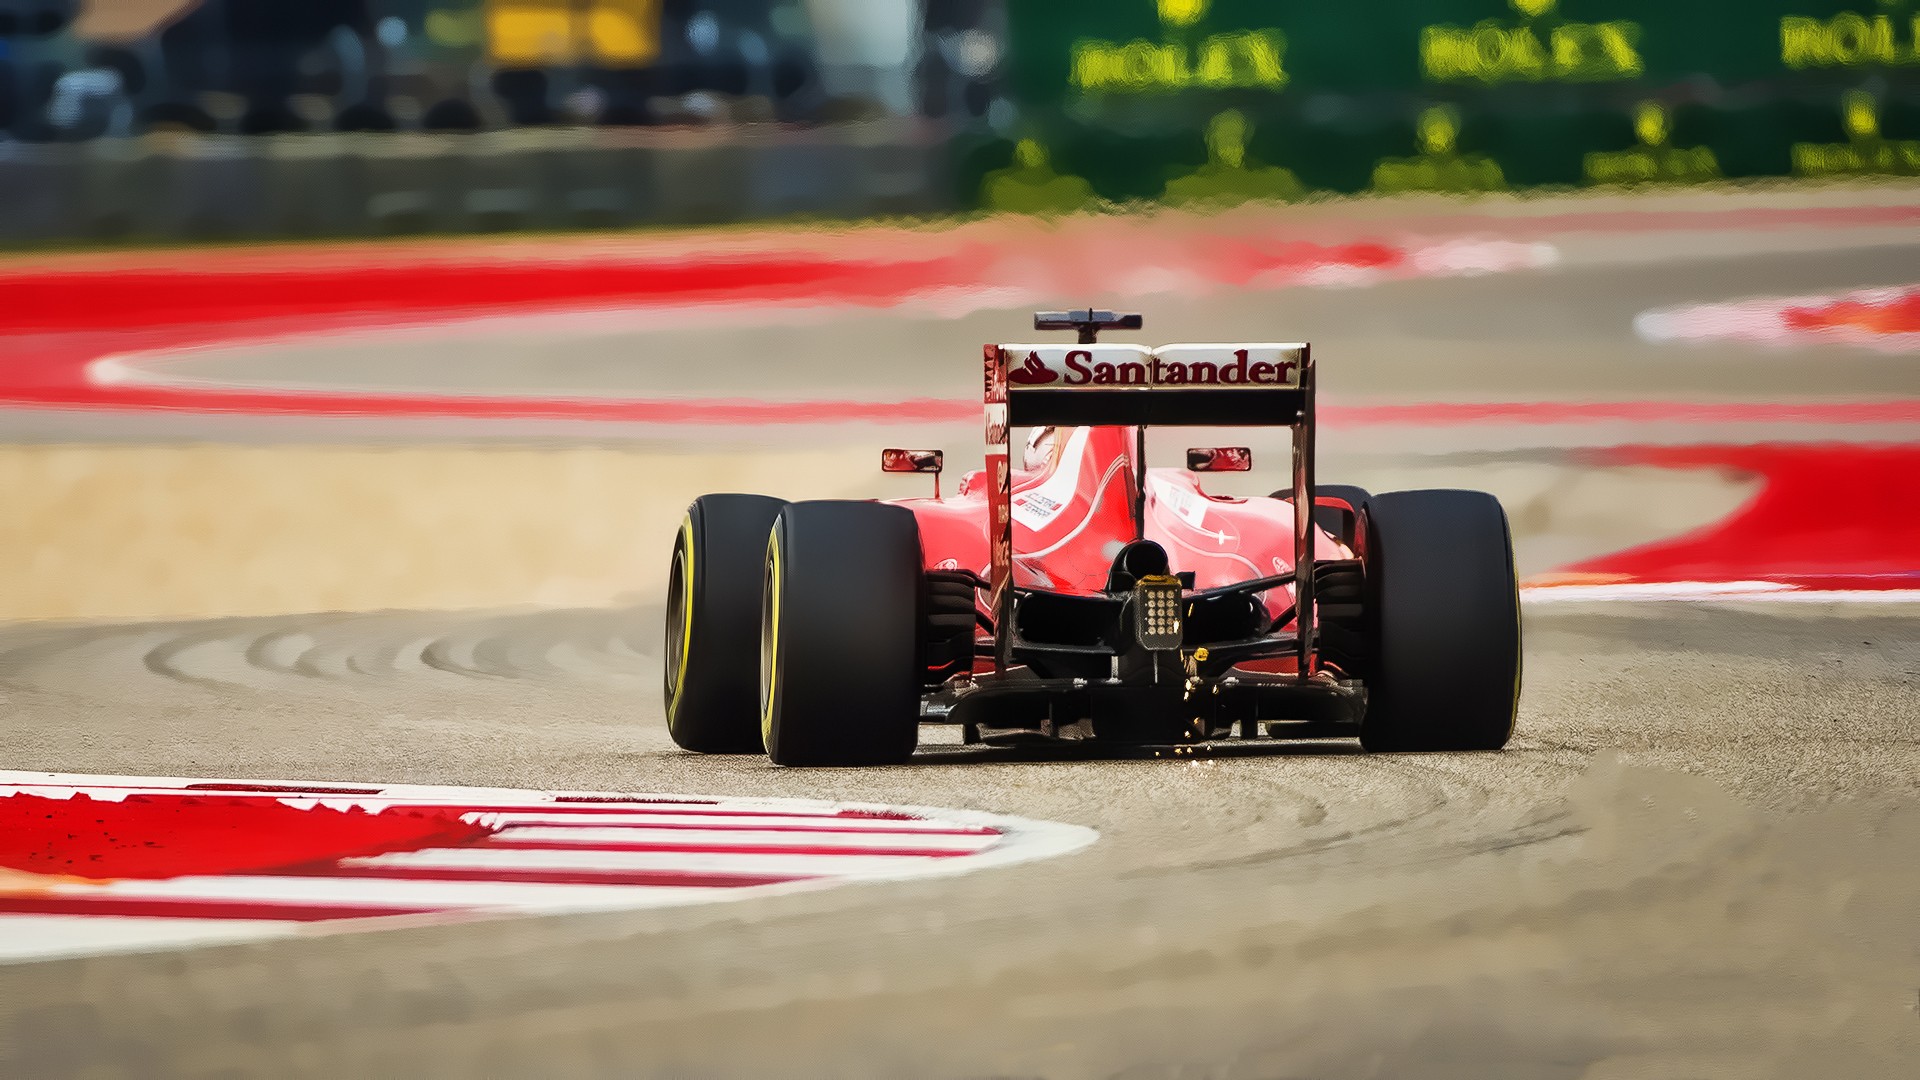 Ferrari, Formula 1 Wallpapers HD / Desktop and Mobile ...